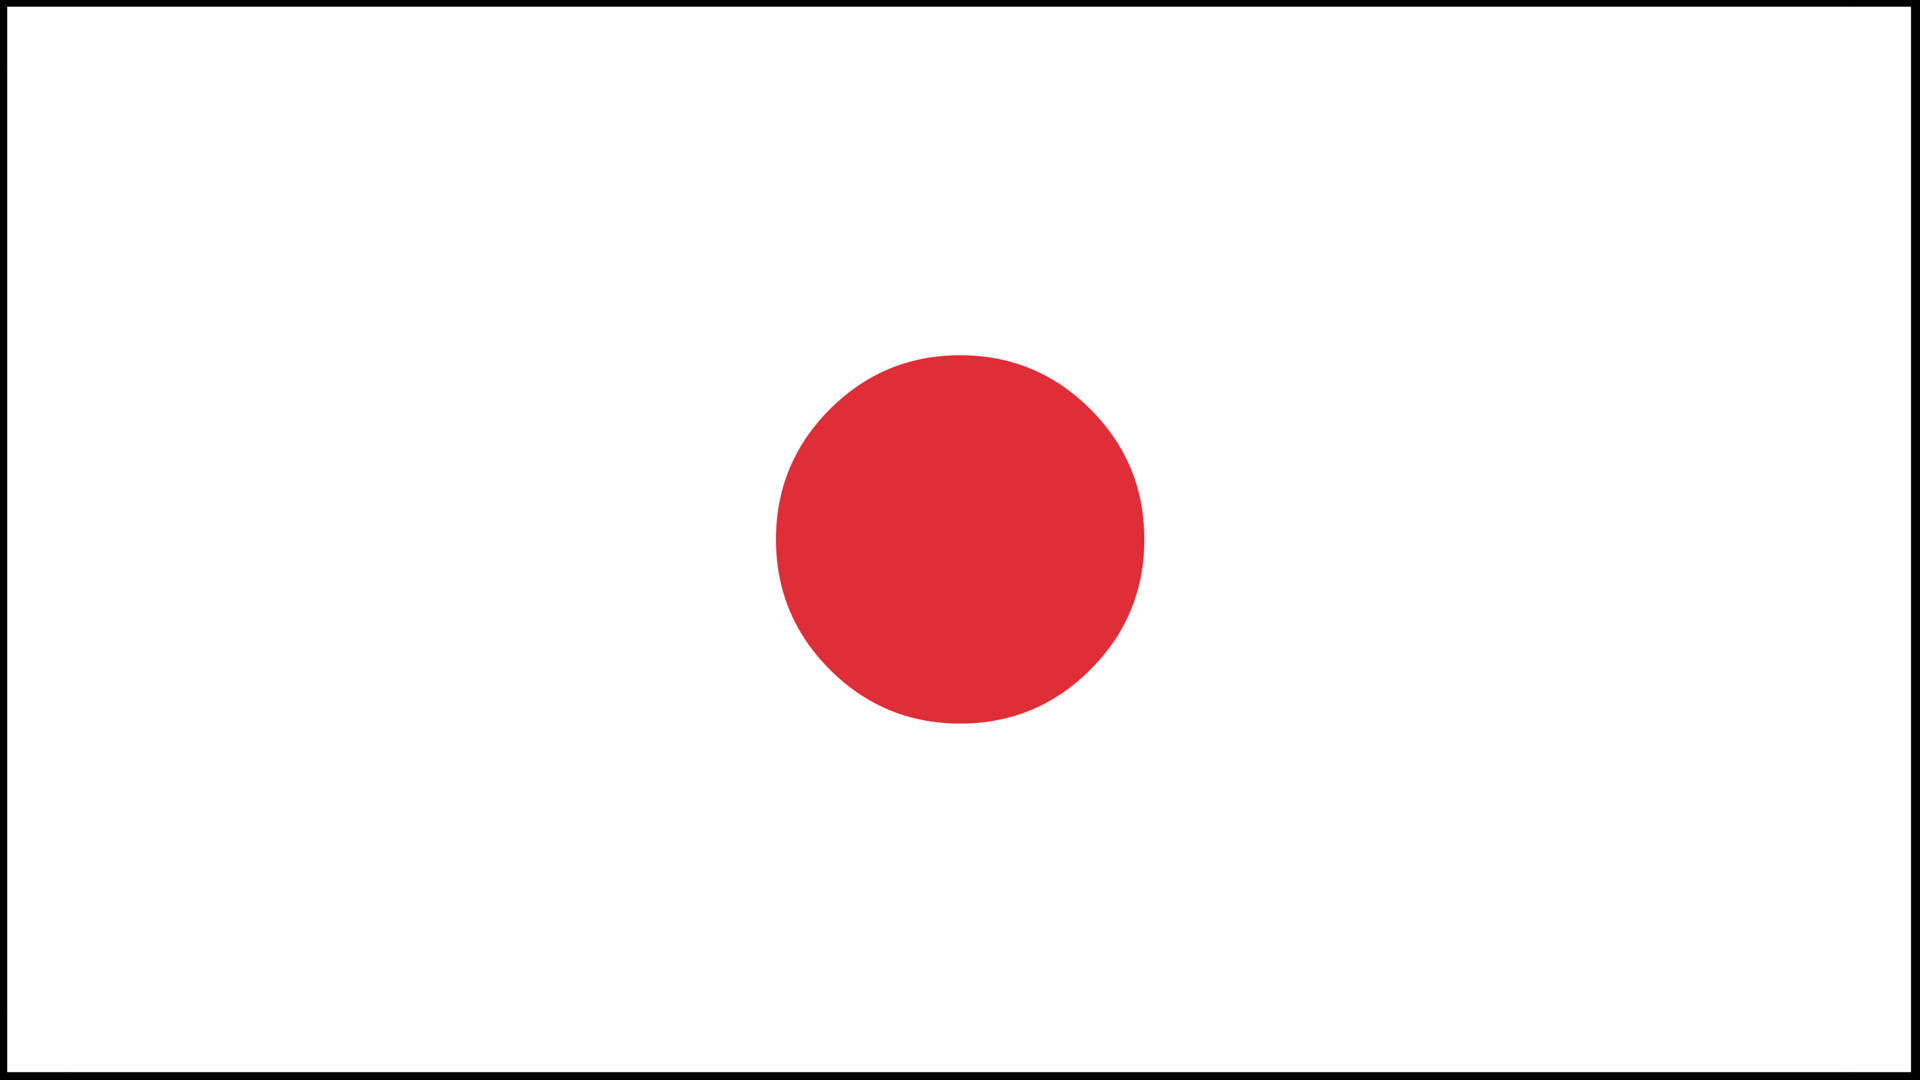 Bred plakat af en japansk flag. Wallpaper